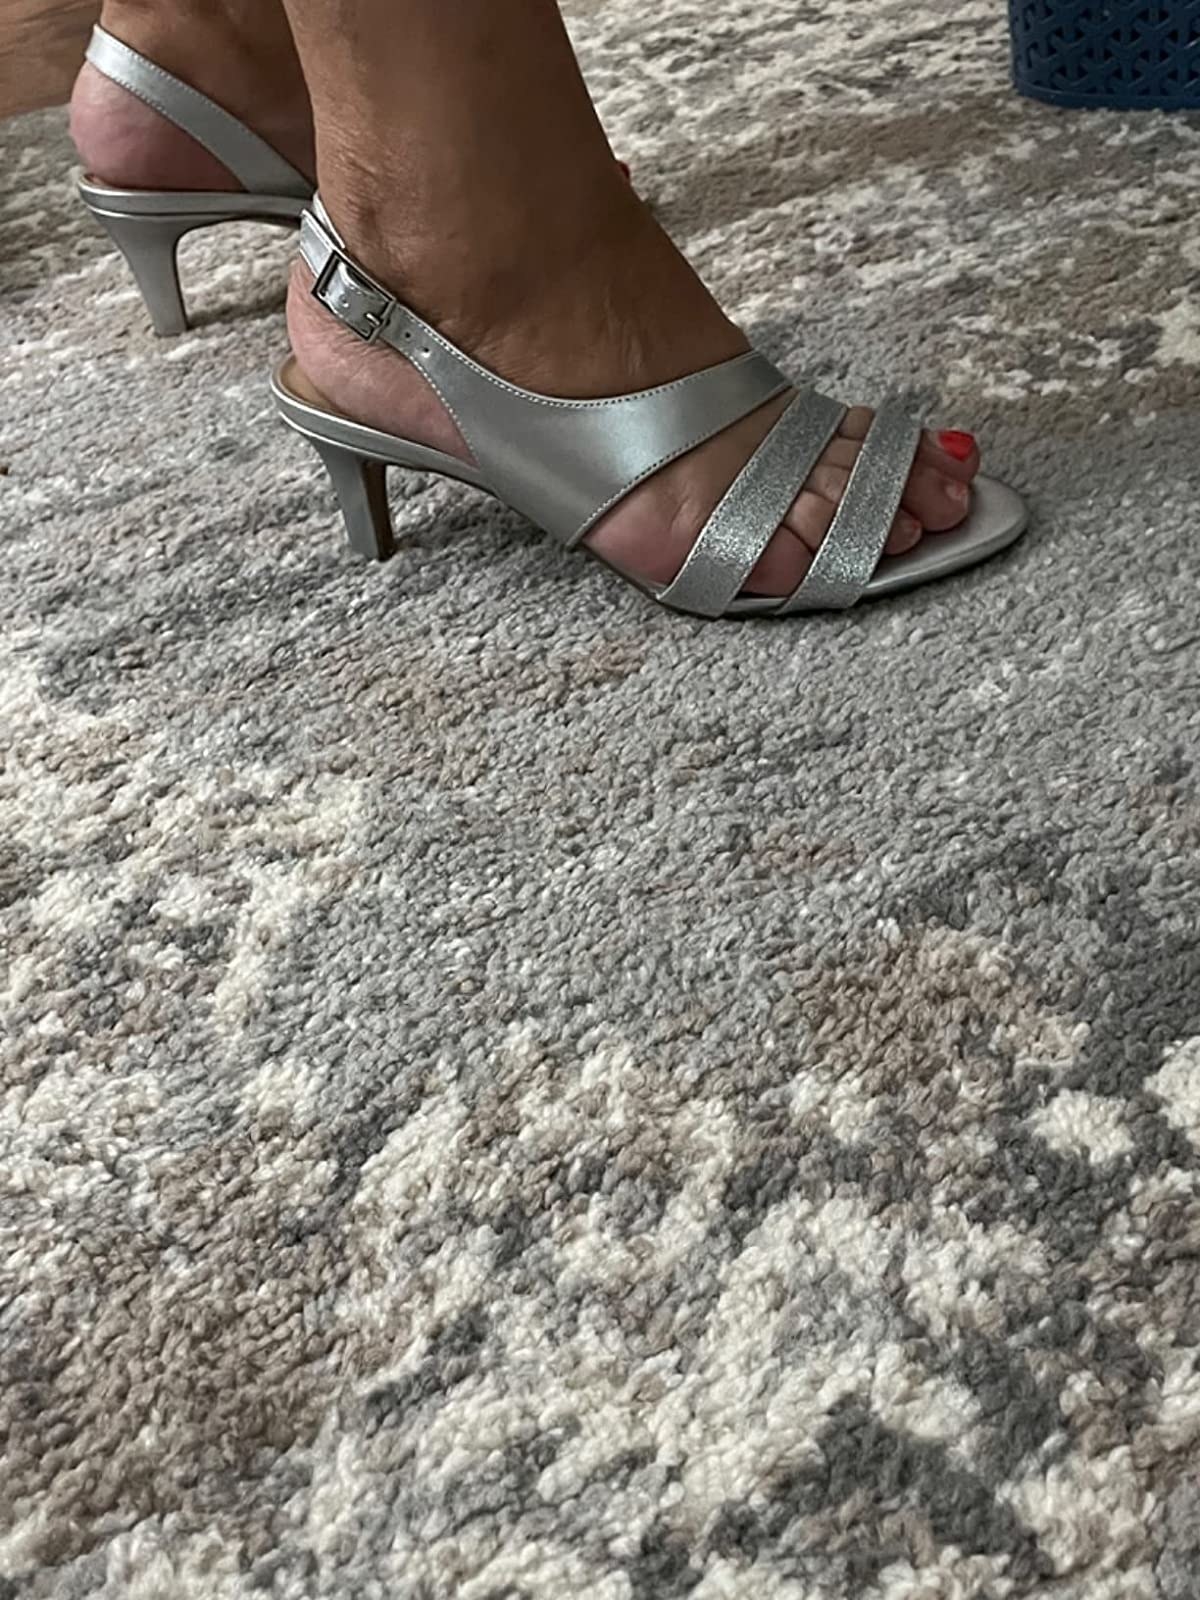 low heel dress sandals